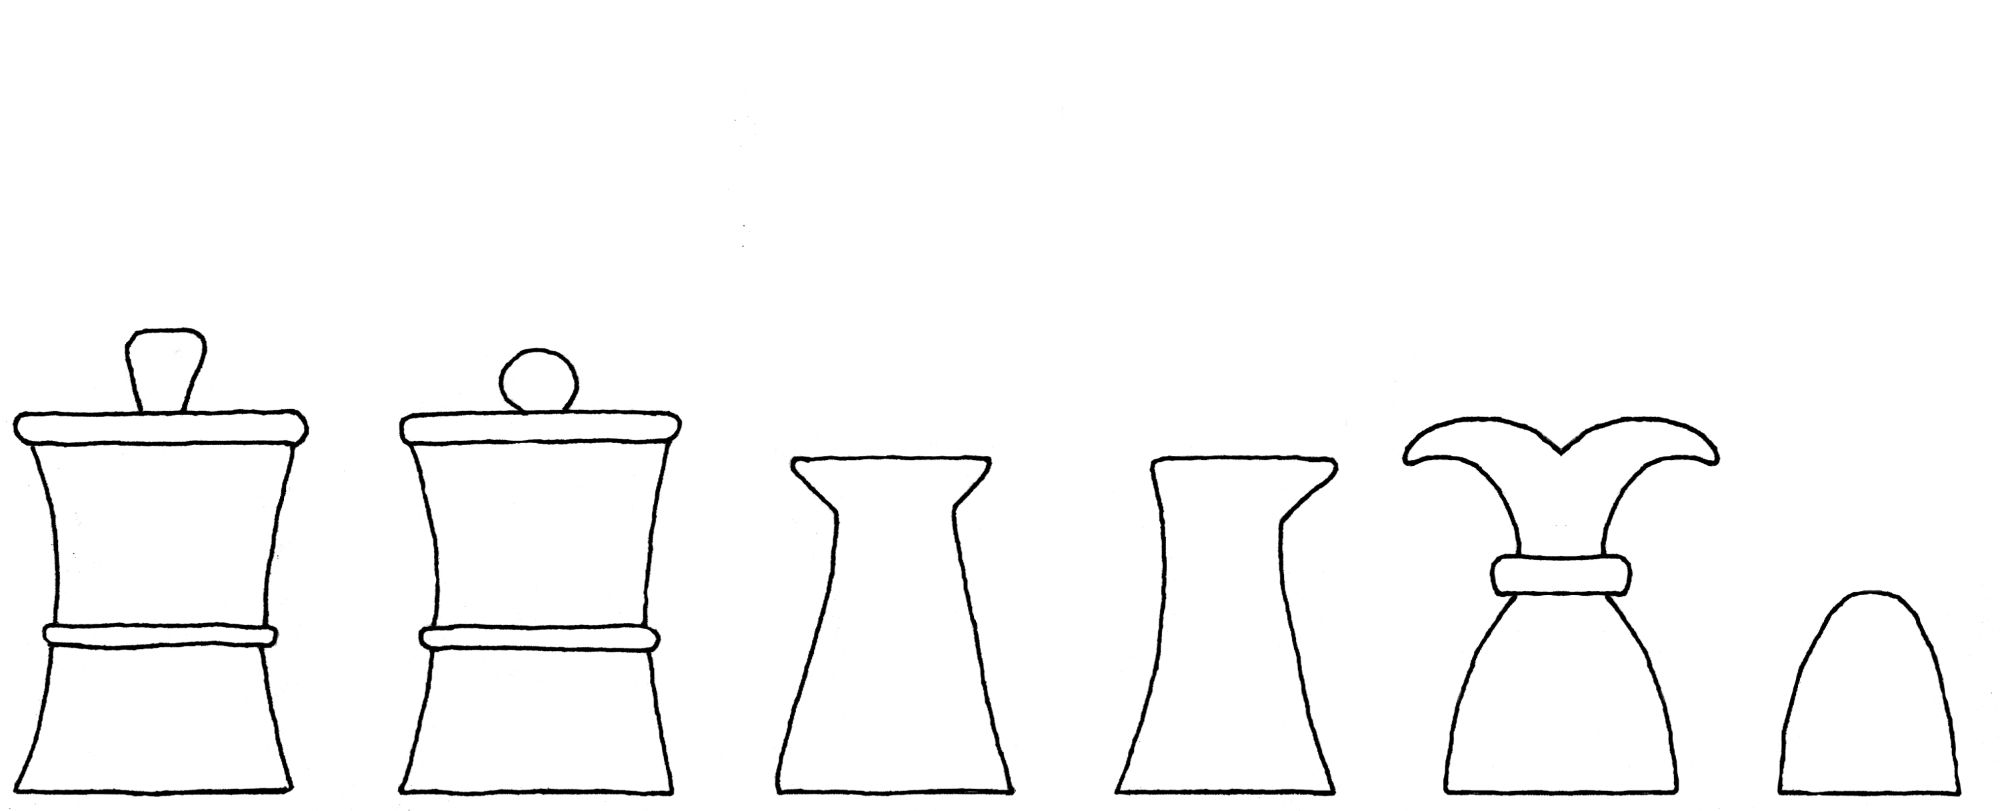 Solacium ludi scaccorum chess set interpretive diagram